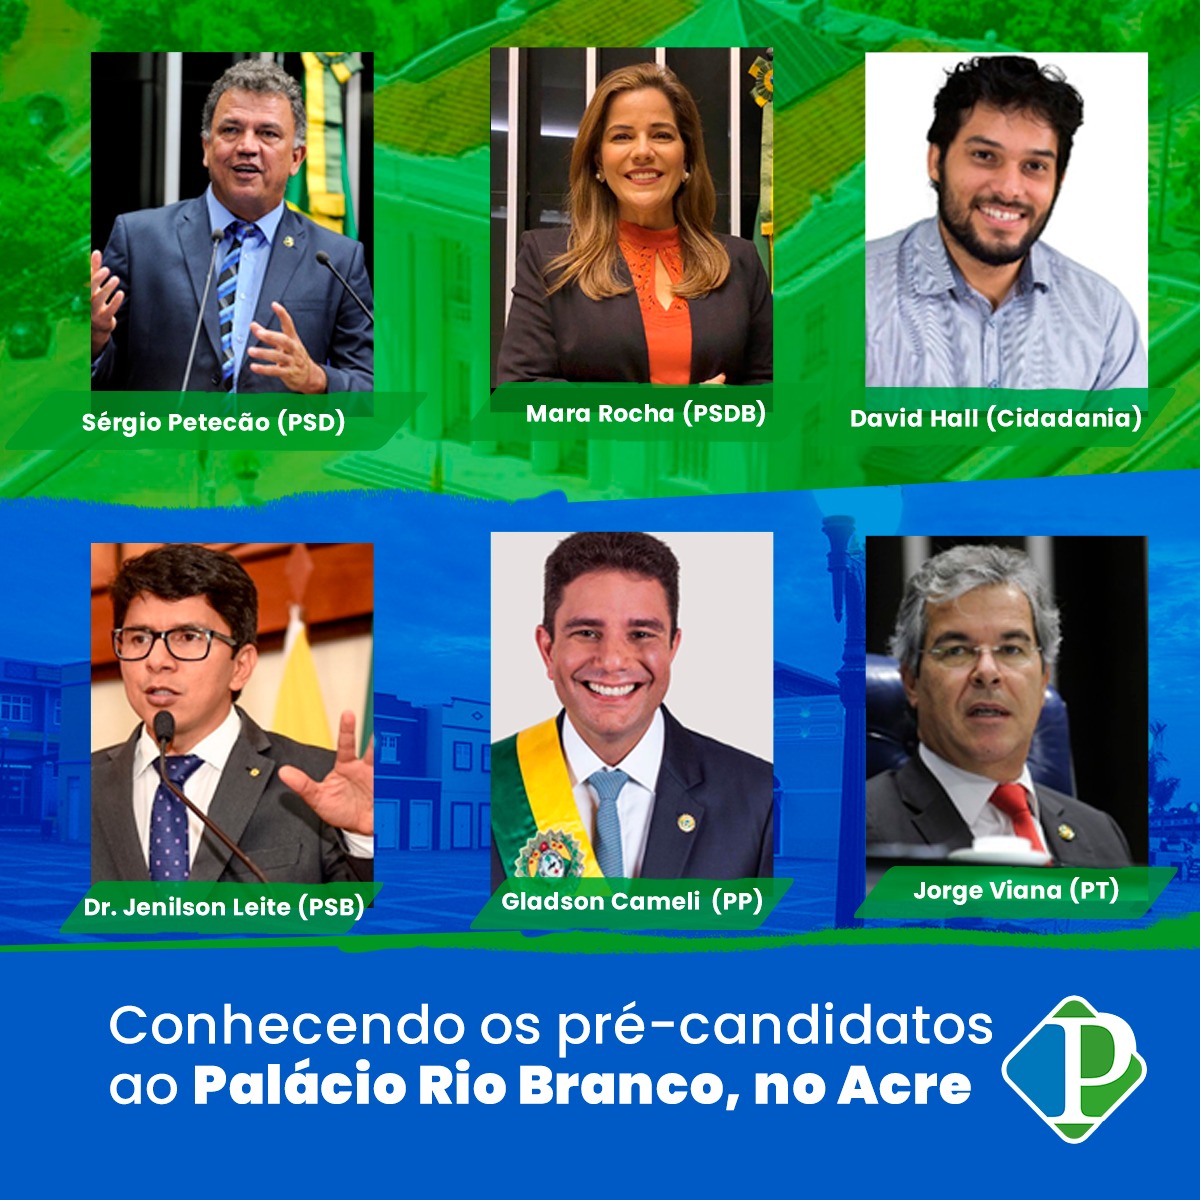 Conhecendo os pré-candidatos ao Palácio Rio Branco, no Acre